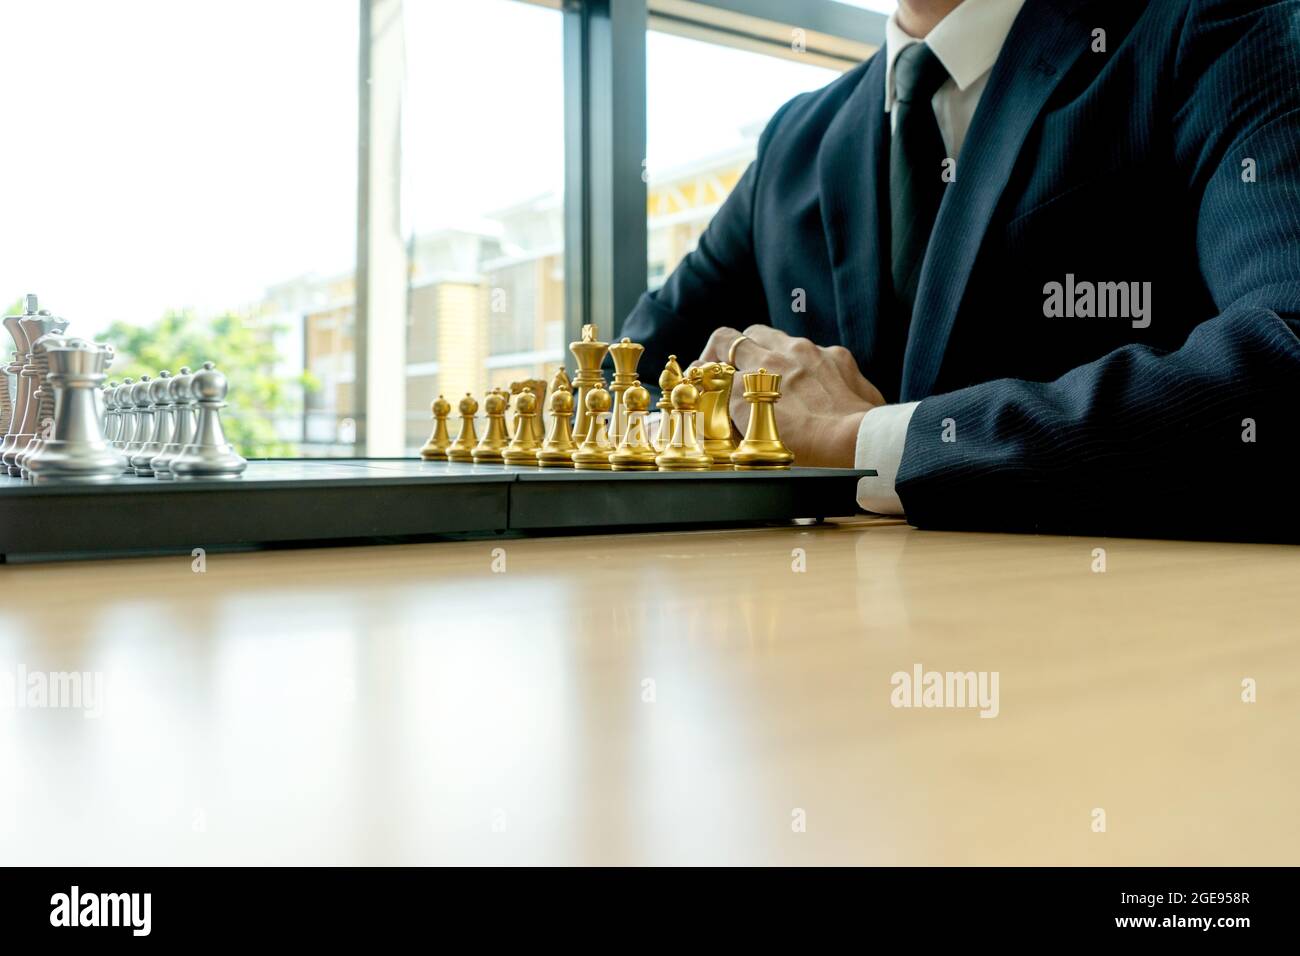 Un homme d'affaires portant un costume se prépare à jouer aux échecs devant le concept de stratégie d'échecs de conseil avec plus d'espace de copie Banque D'Images